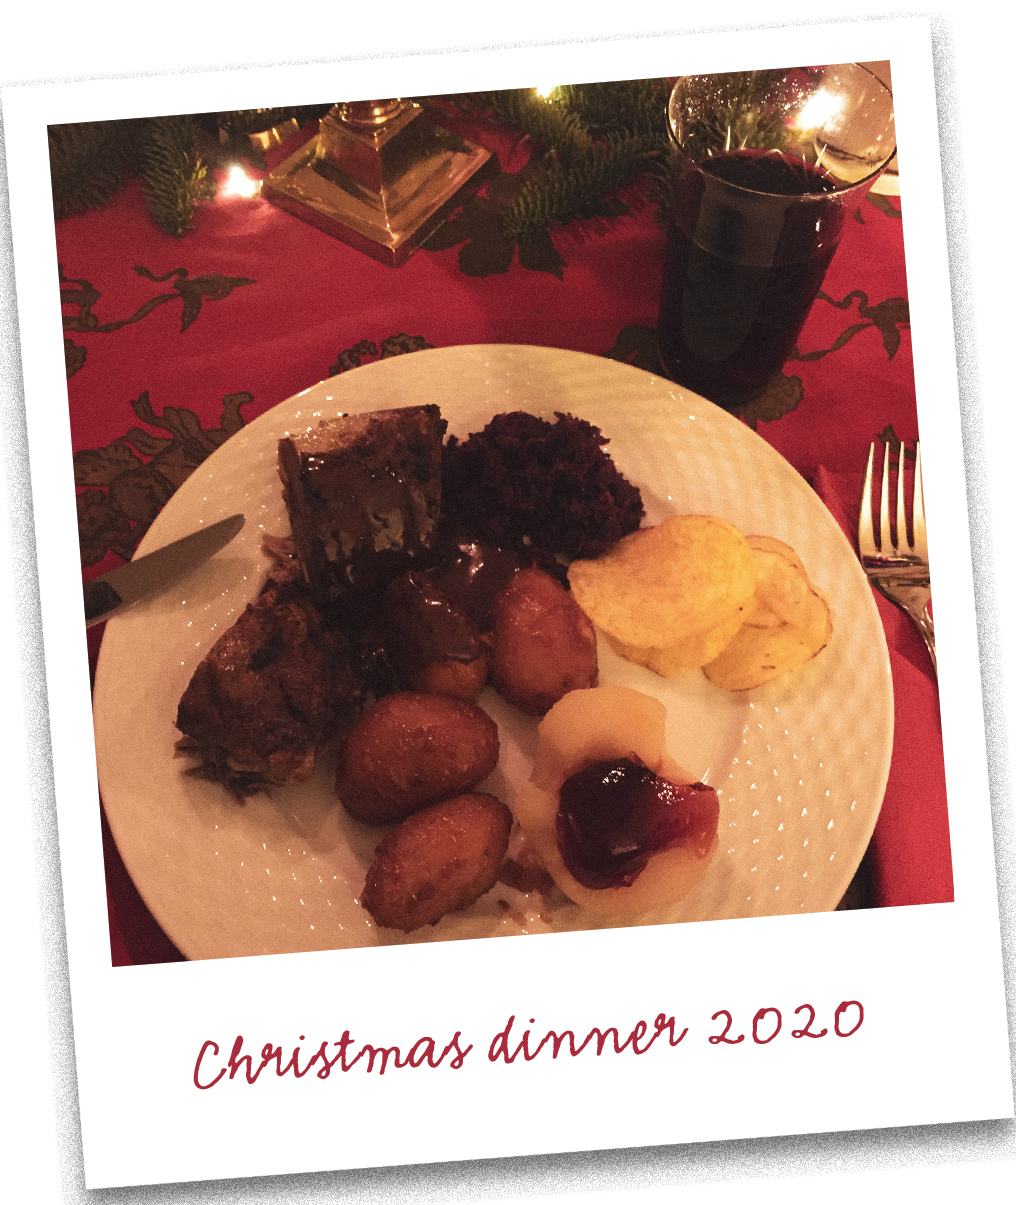 julemiddag traditional danish christmas dinner duck and caramelized potatoes brunede kartofler franske kartofler aeble med ribsgele 